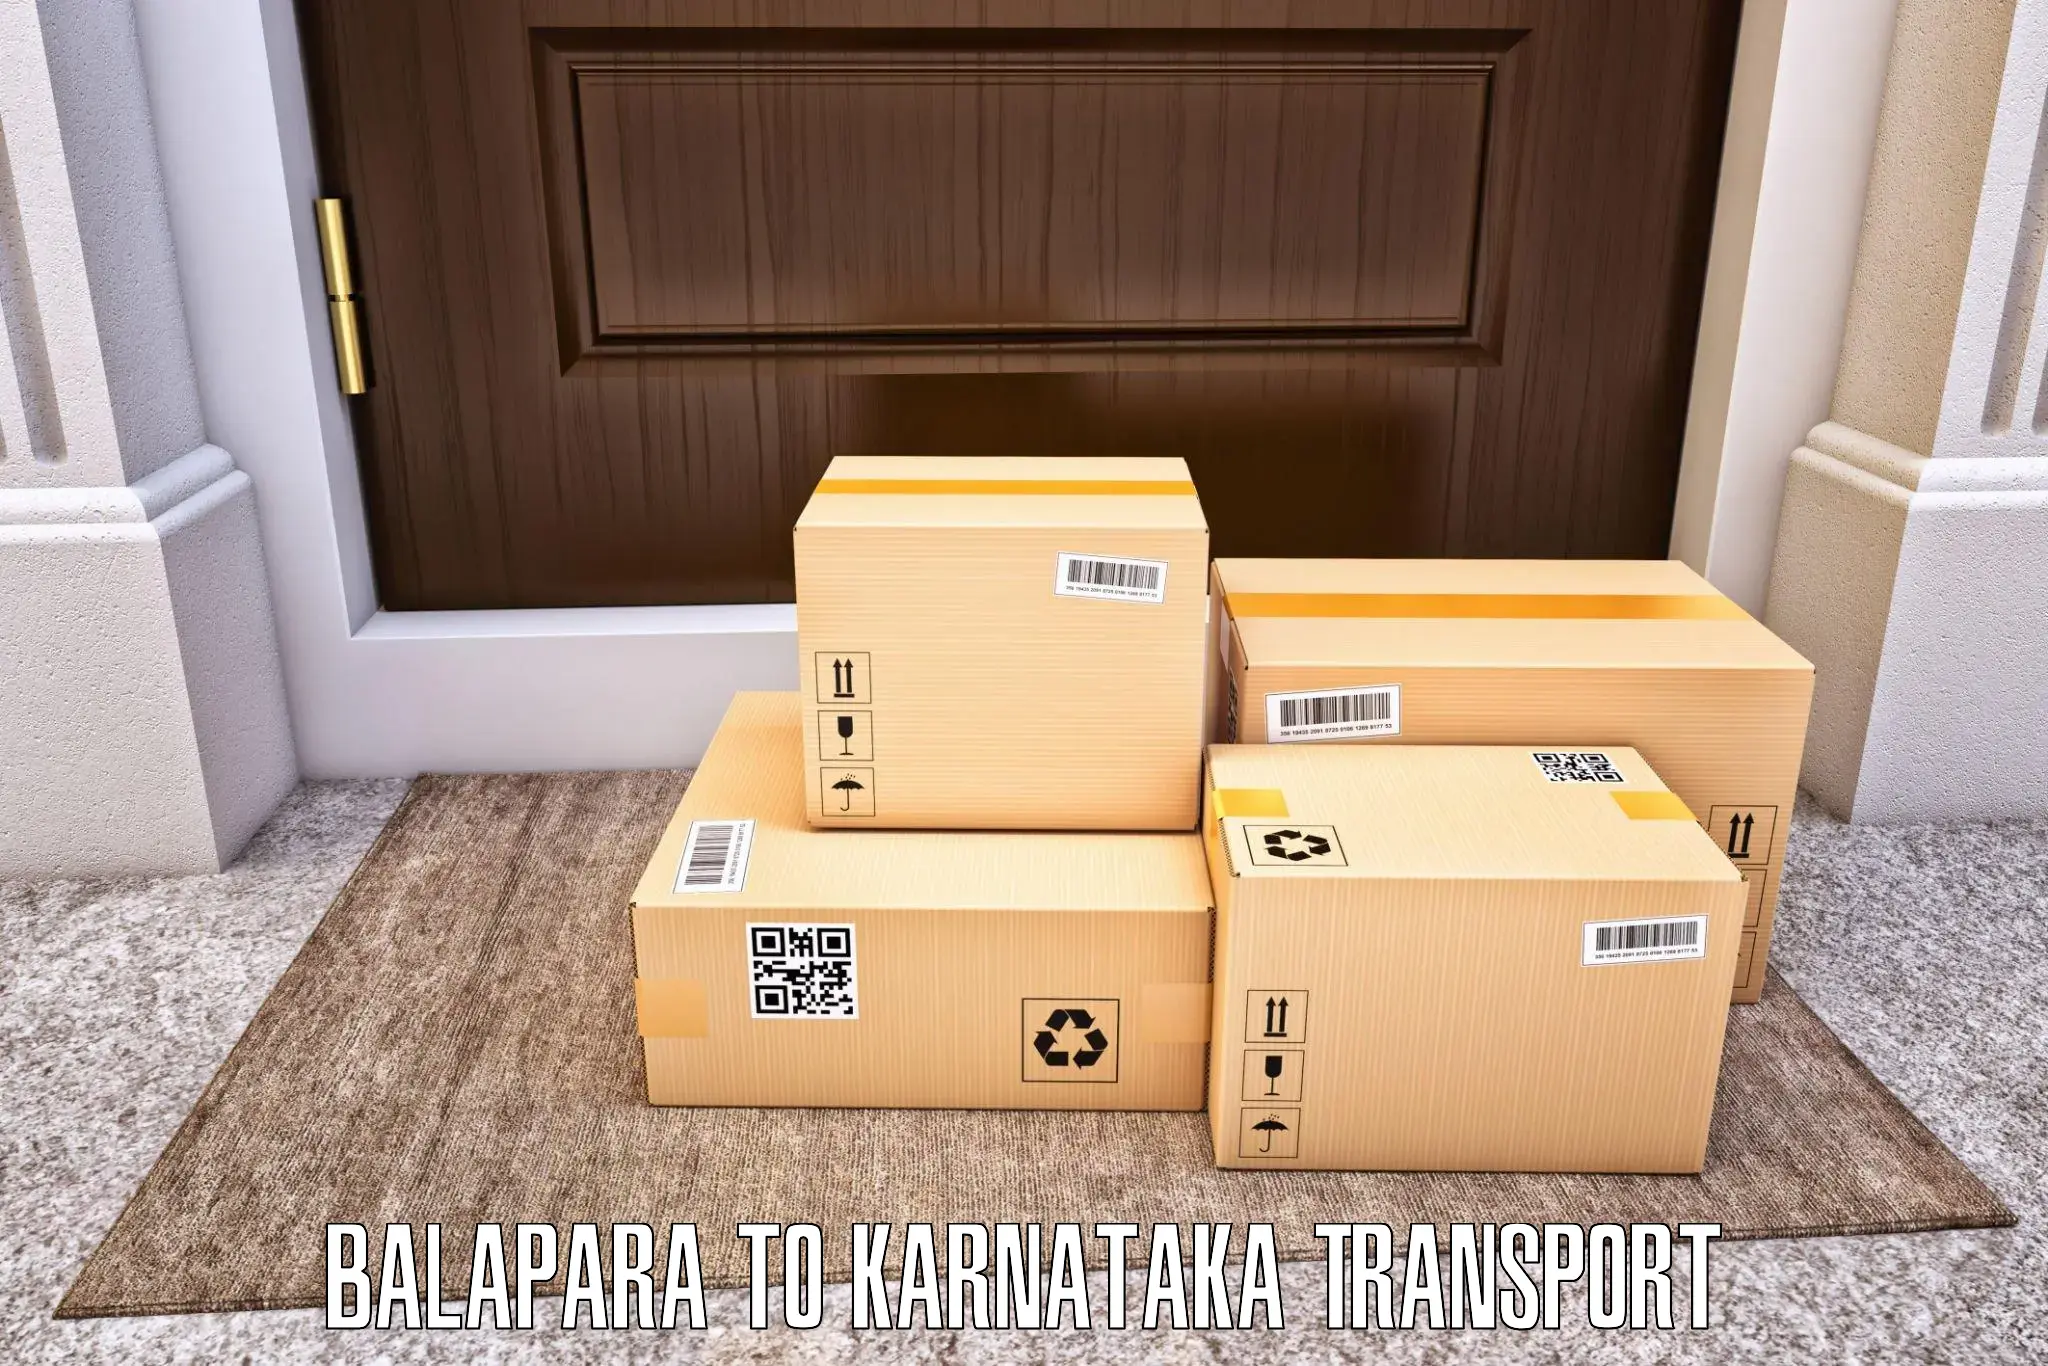 Pick up transport service Balapara to Kalasa